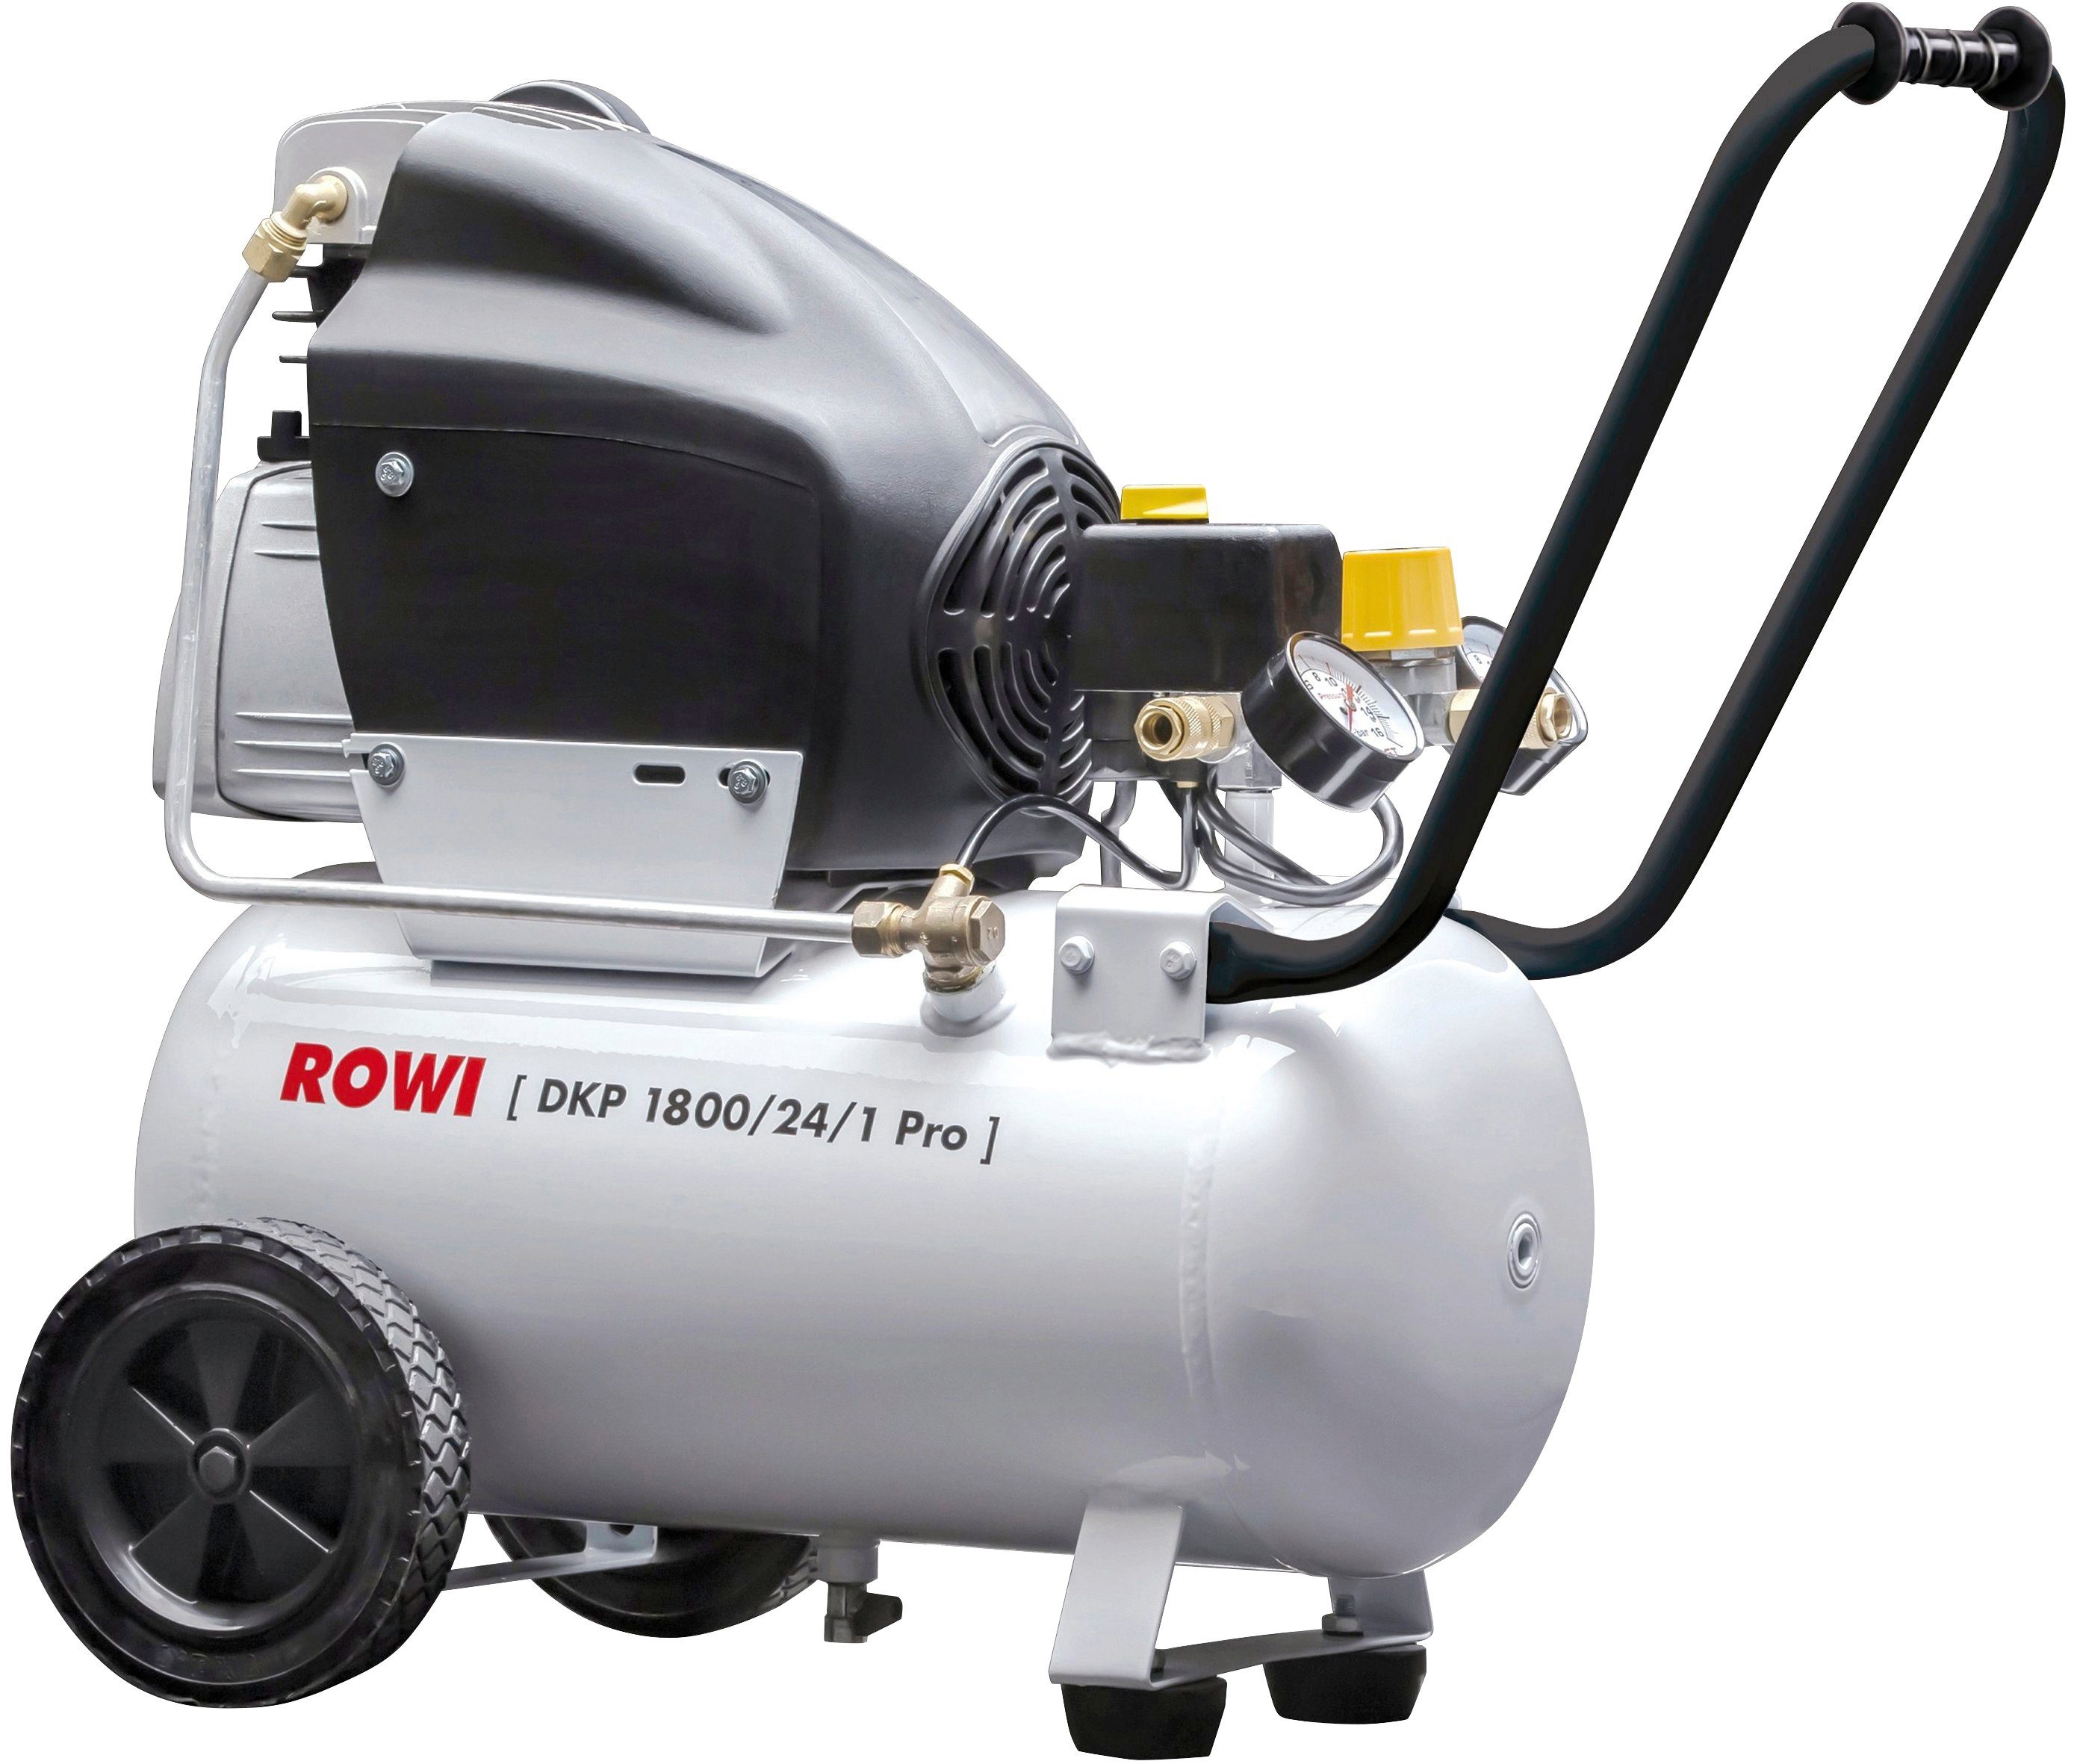 100 % garantiert ROWI Kompressor DKP max. Pro, l 10 24 1800/24/1 1800 bar, W